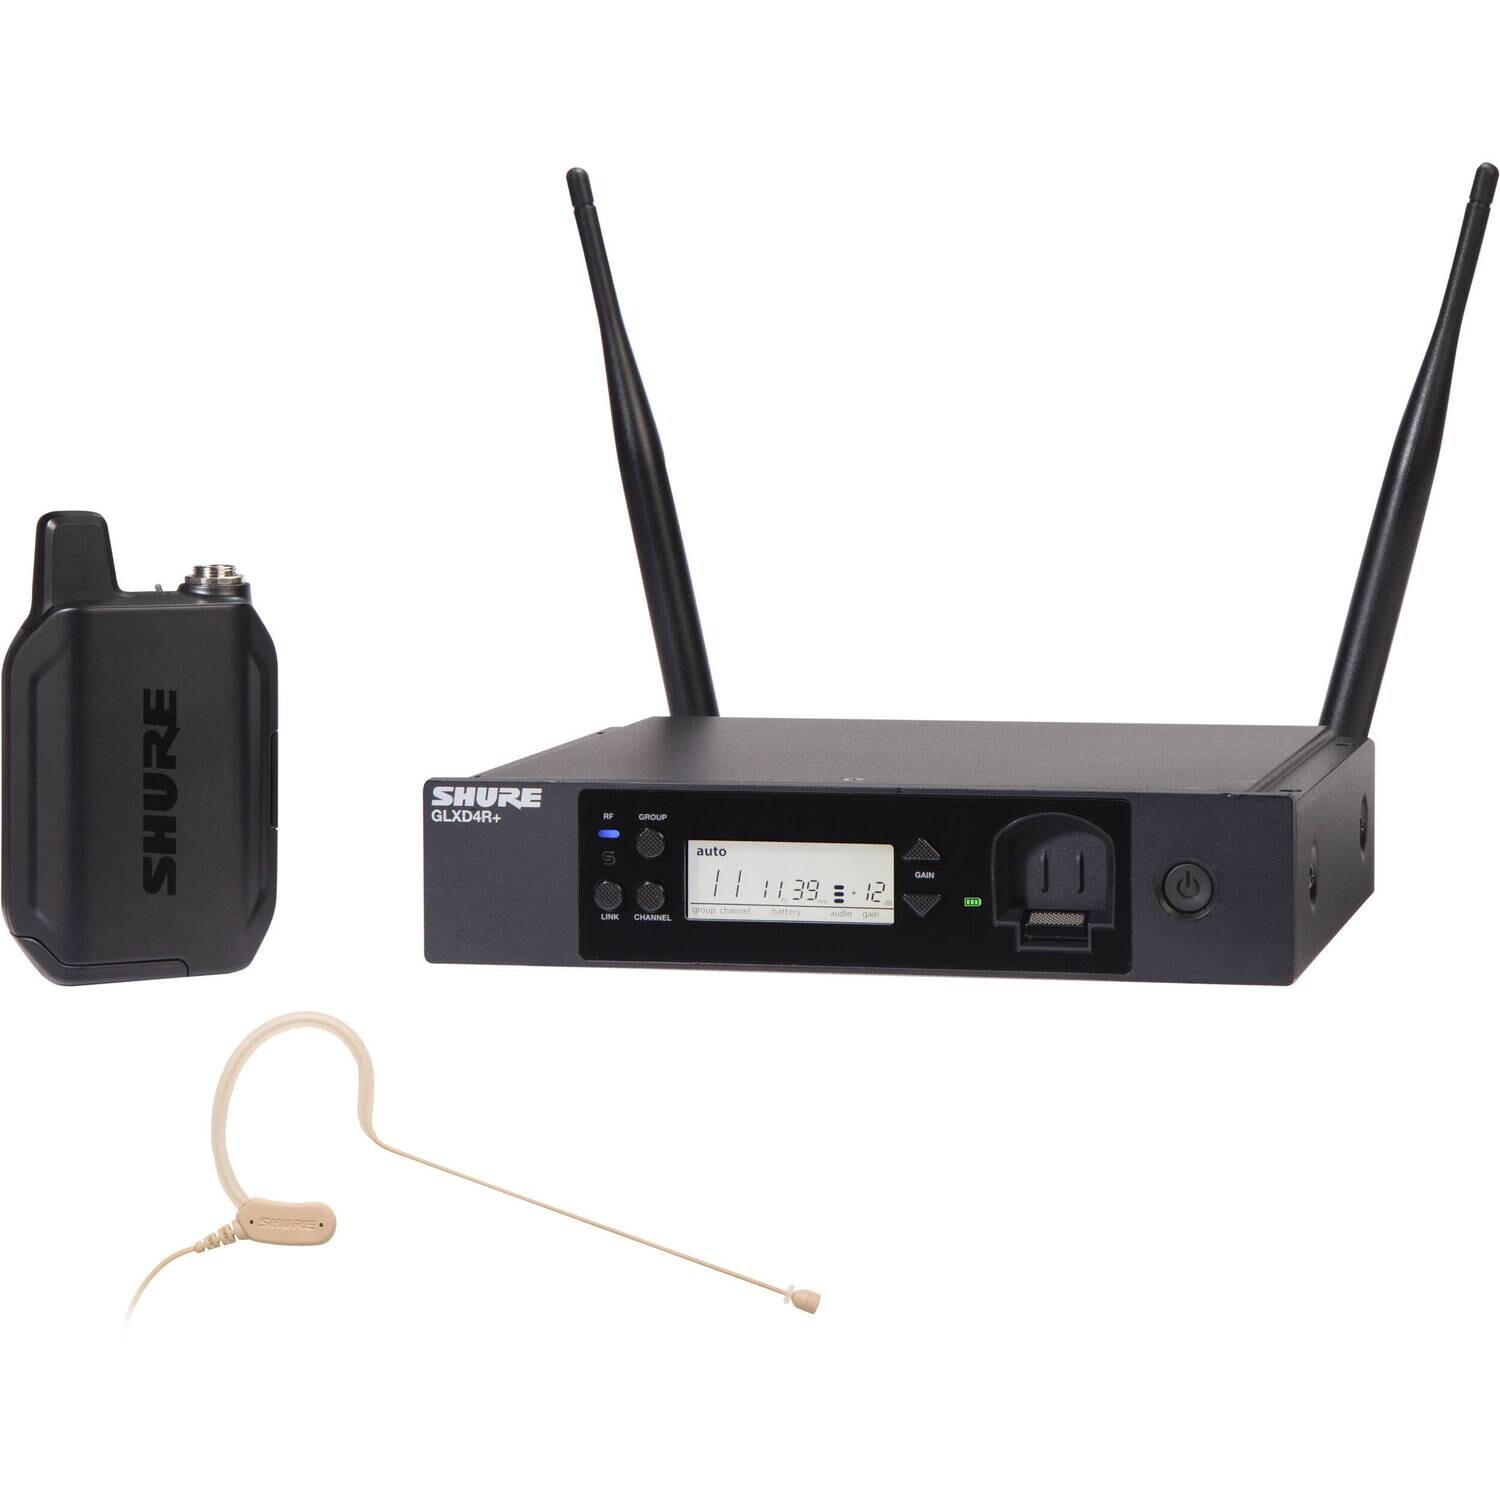 Shure GLXD14R+/MX53
(Digital Wireless Rack System with MX153 Headset Microphone)